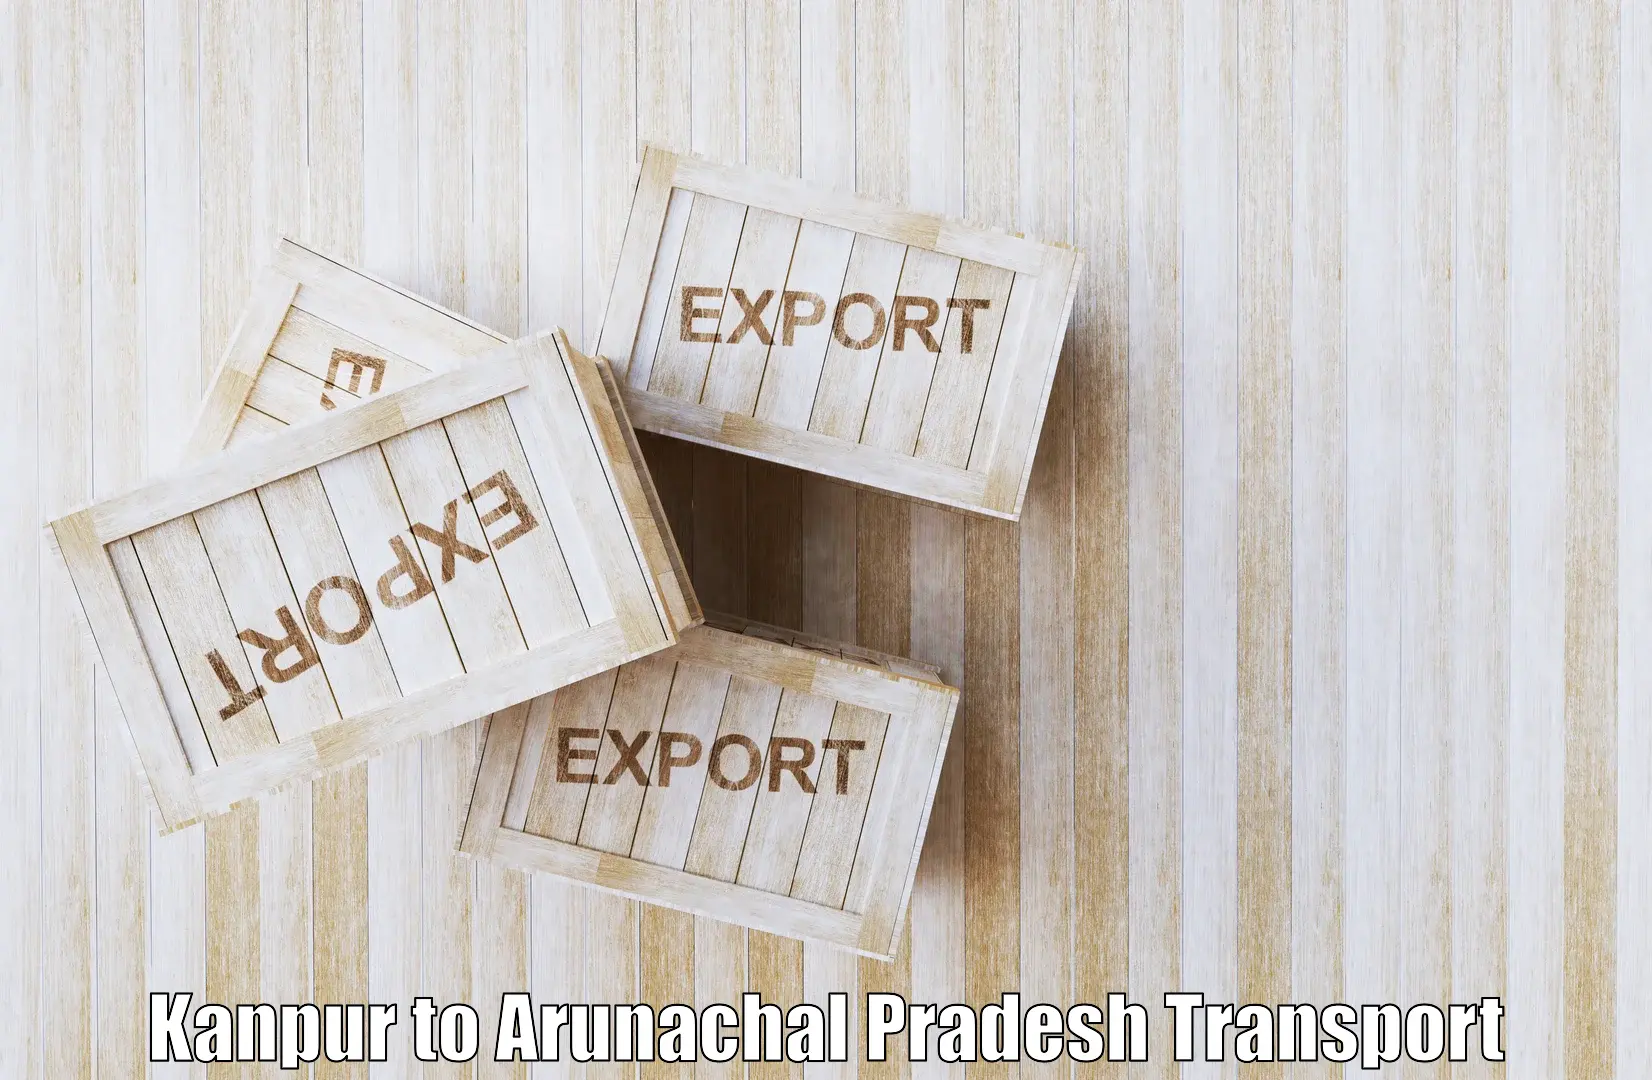 Cargo train transport services Kanpur to Arunachal Pradesh